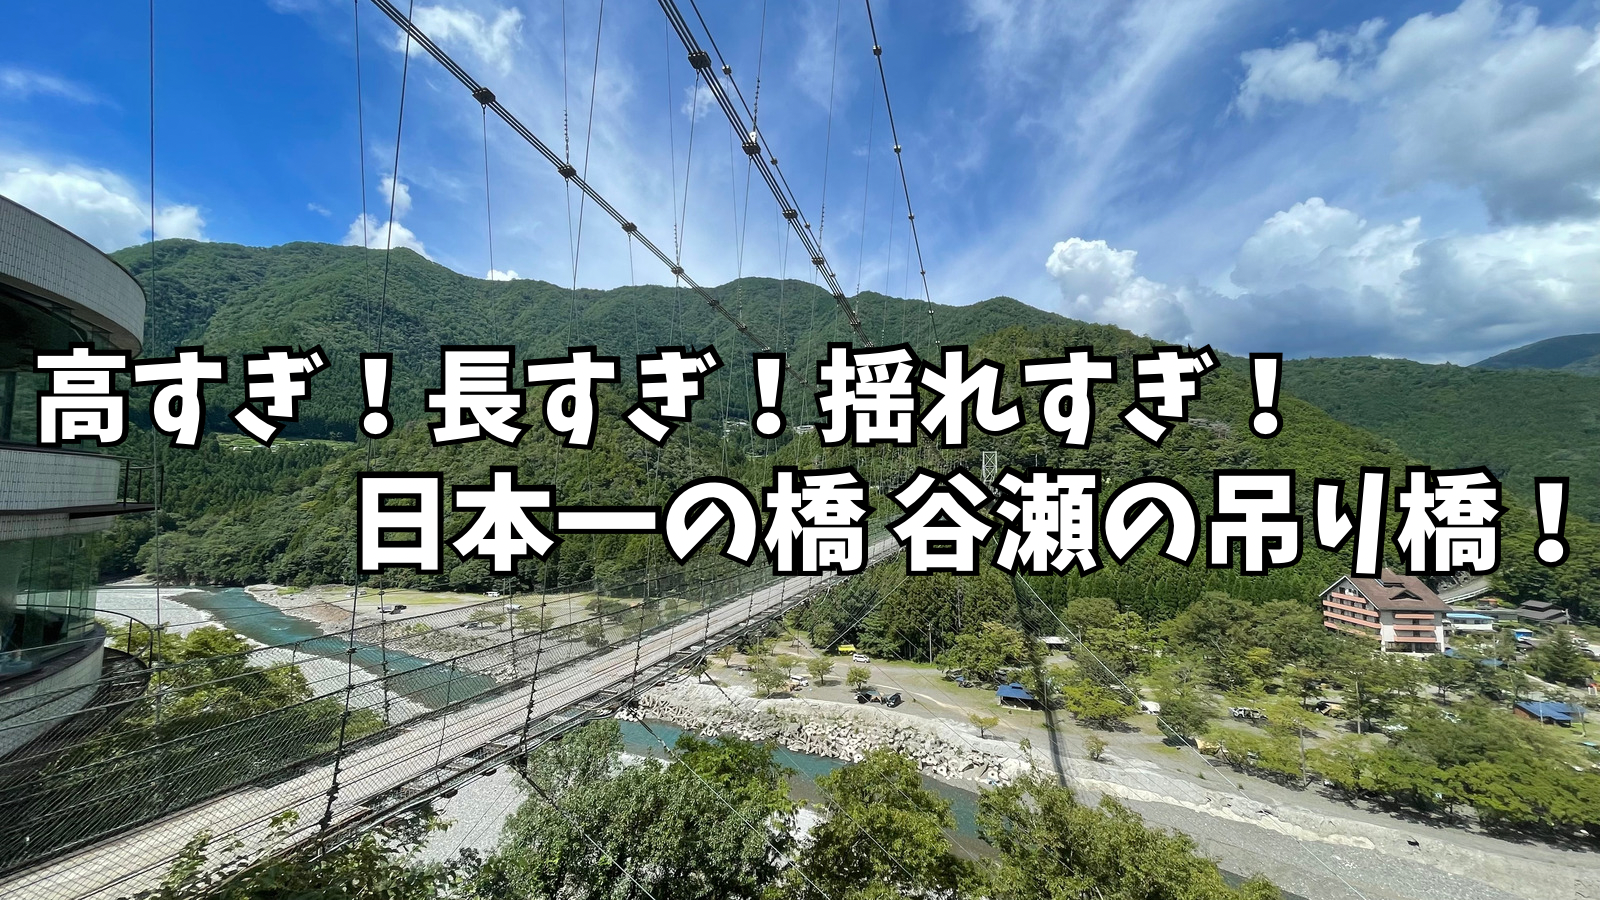 日本一長い生活用吊り橋『谷瀬の吊り橋』